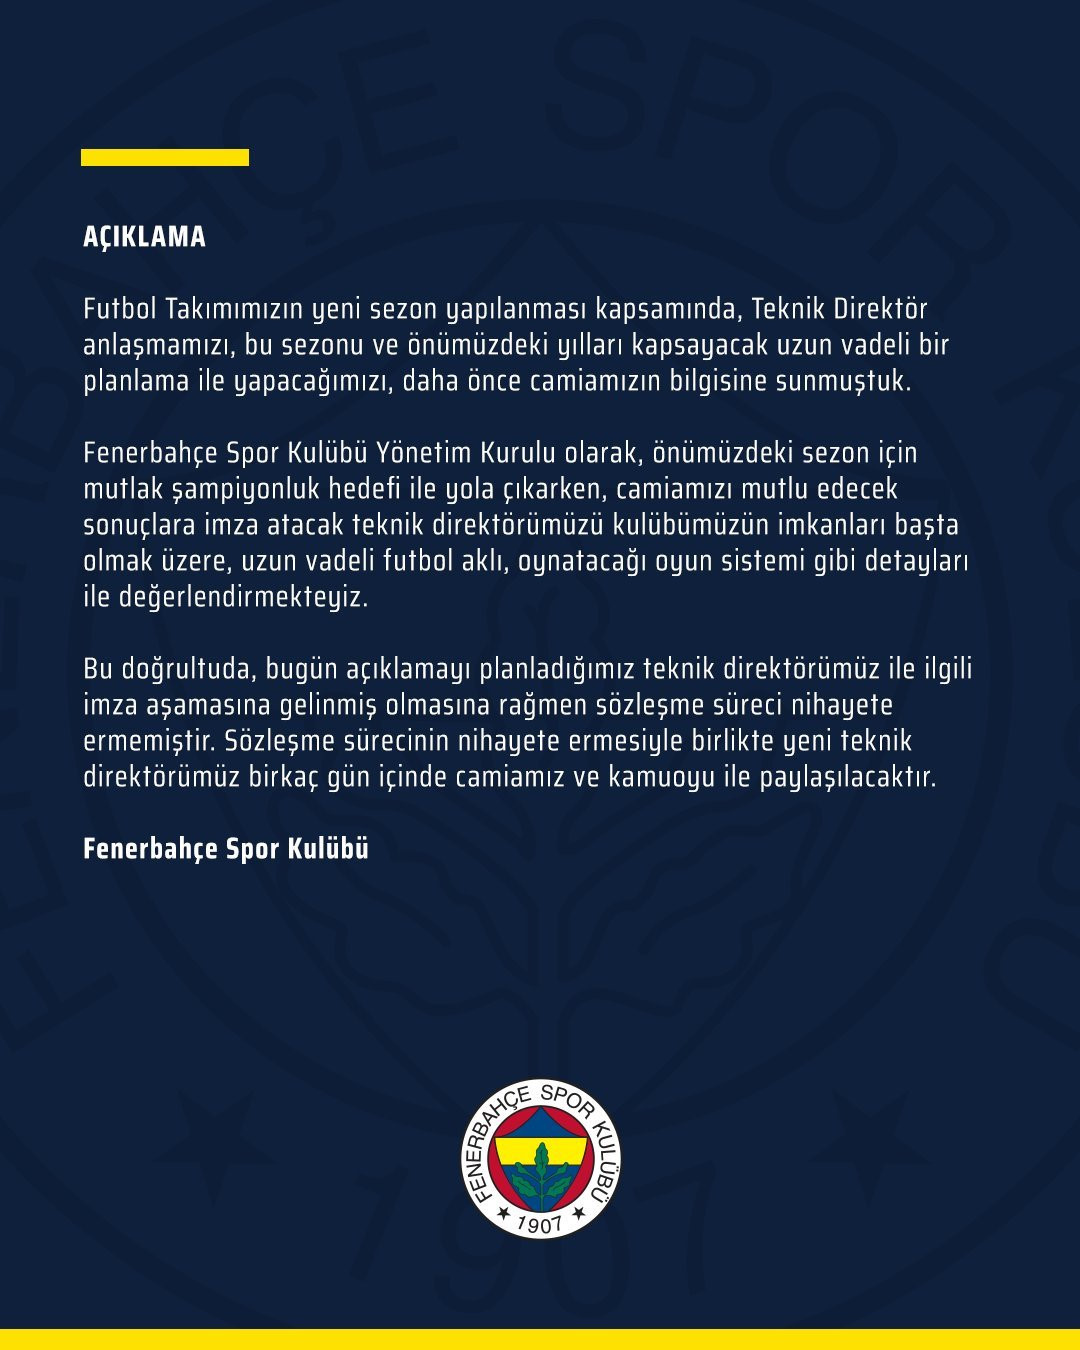 Fenerbahçe'nin yayınladığı resmi açıklama.